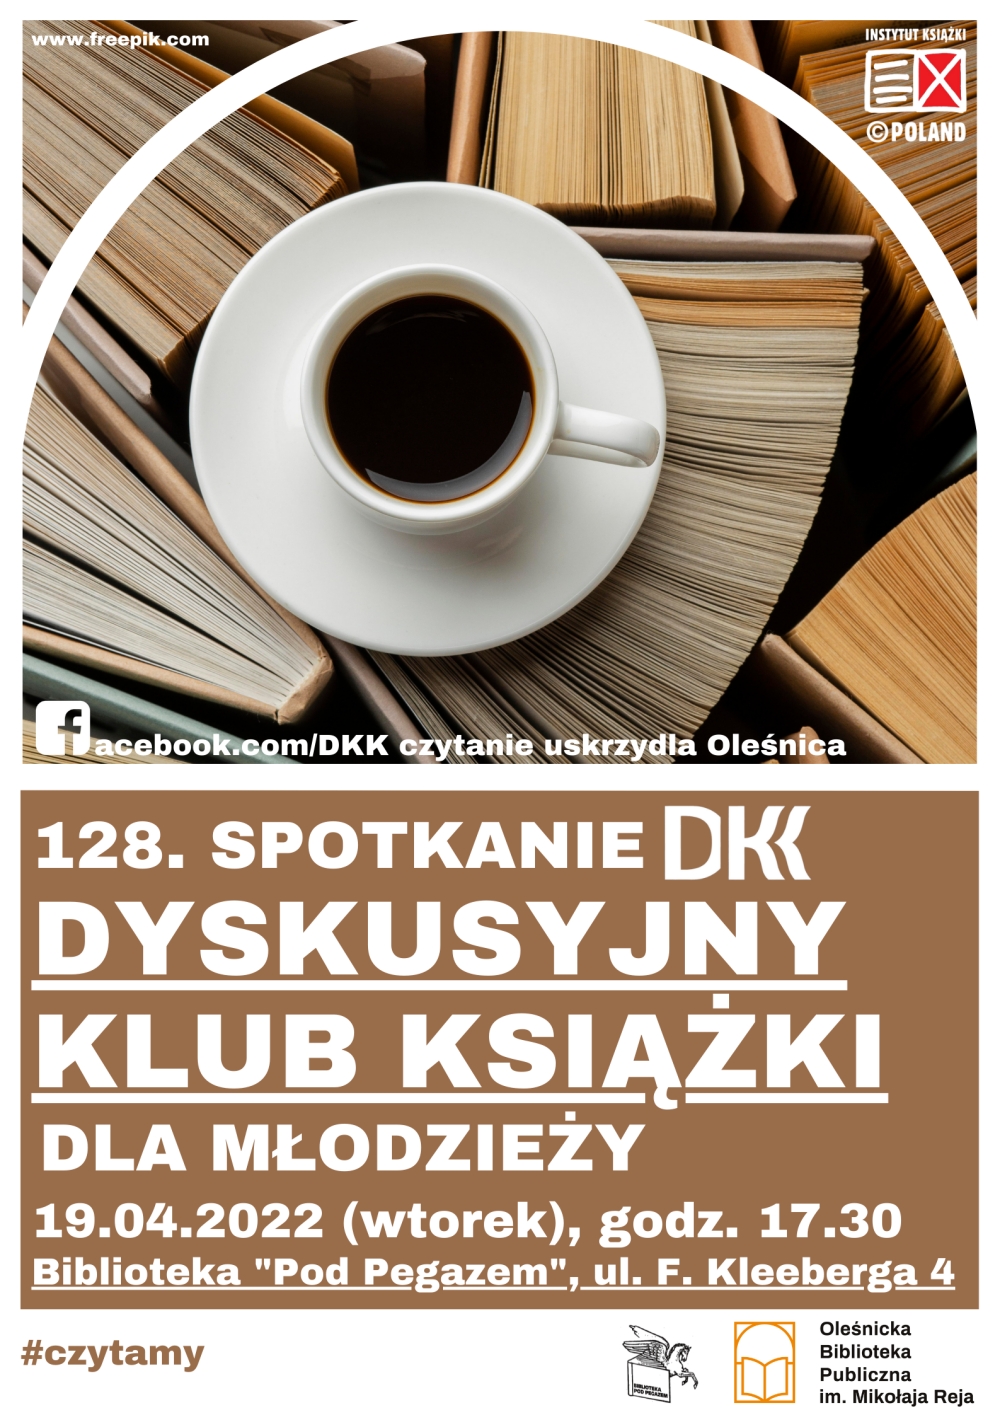 Plakat promujący 128 spotkanie w ramach DKK dla młodzieży w Bibliotece 